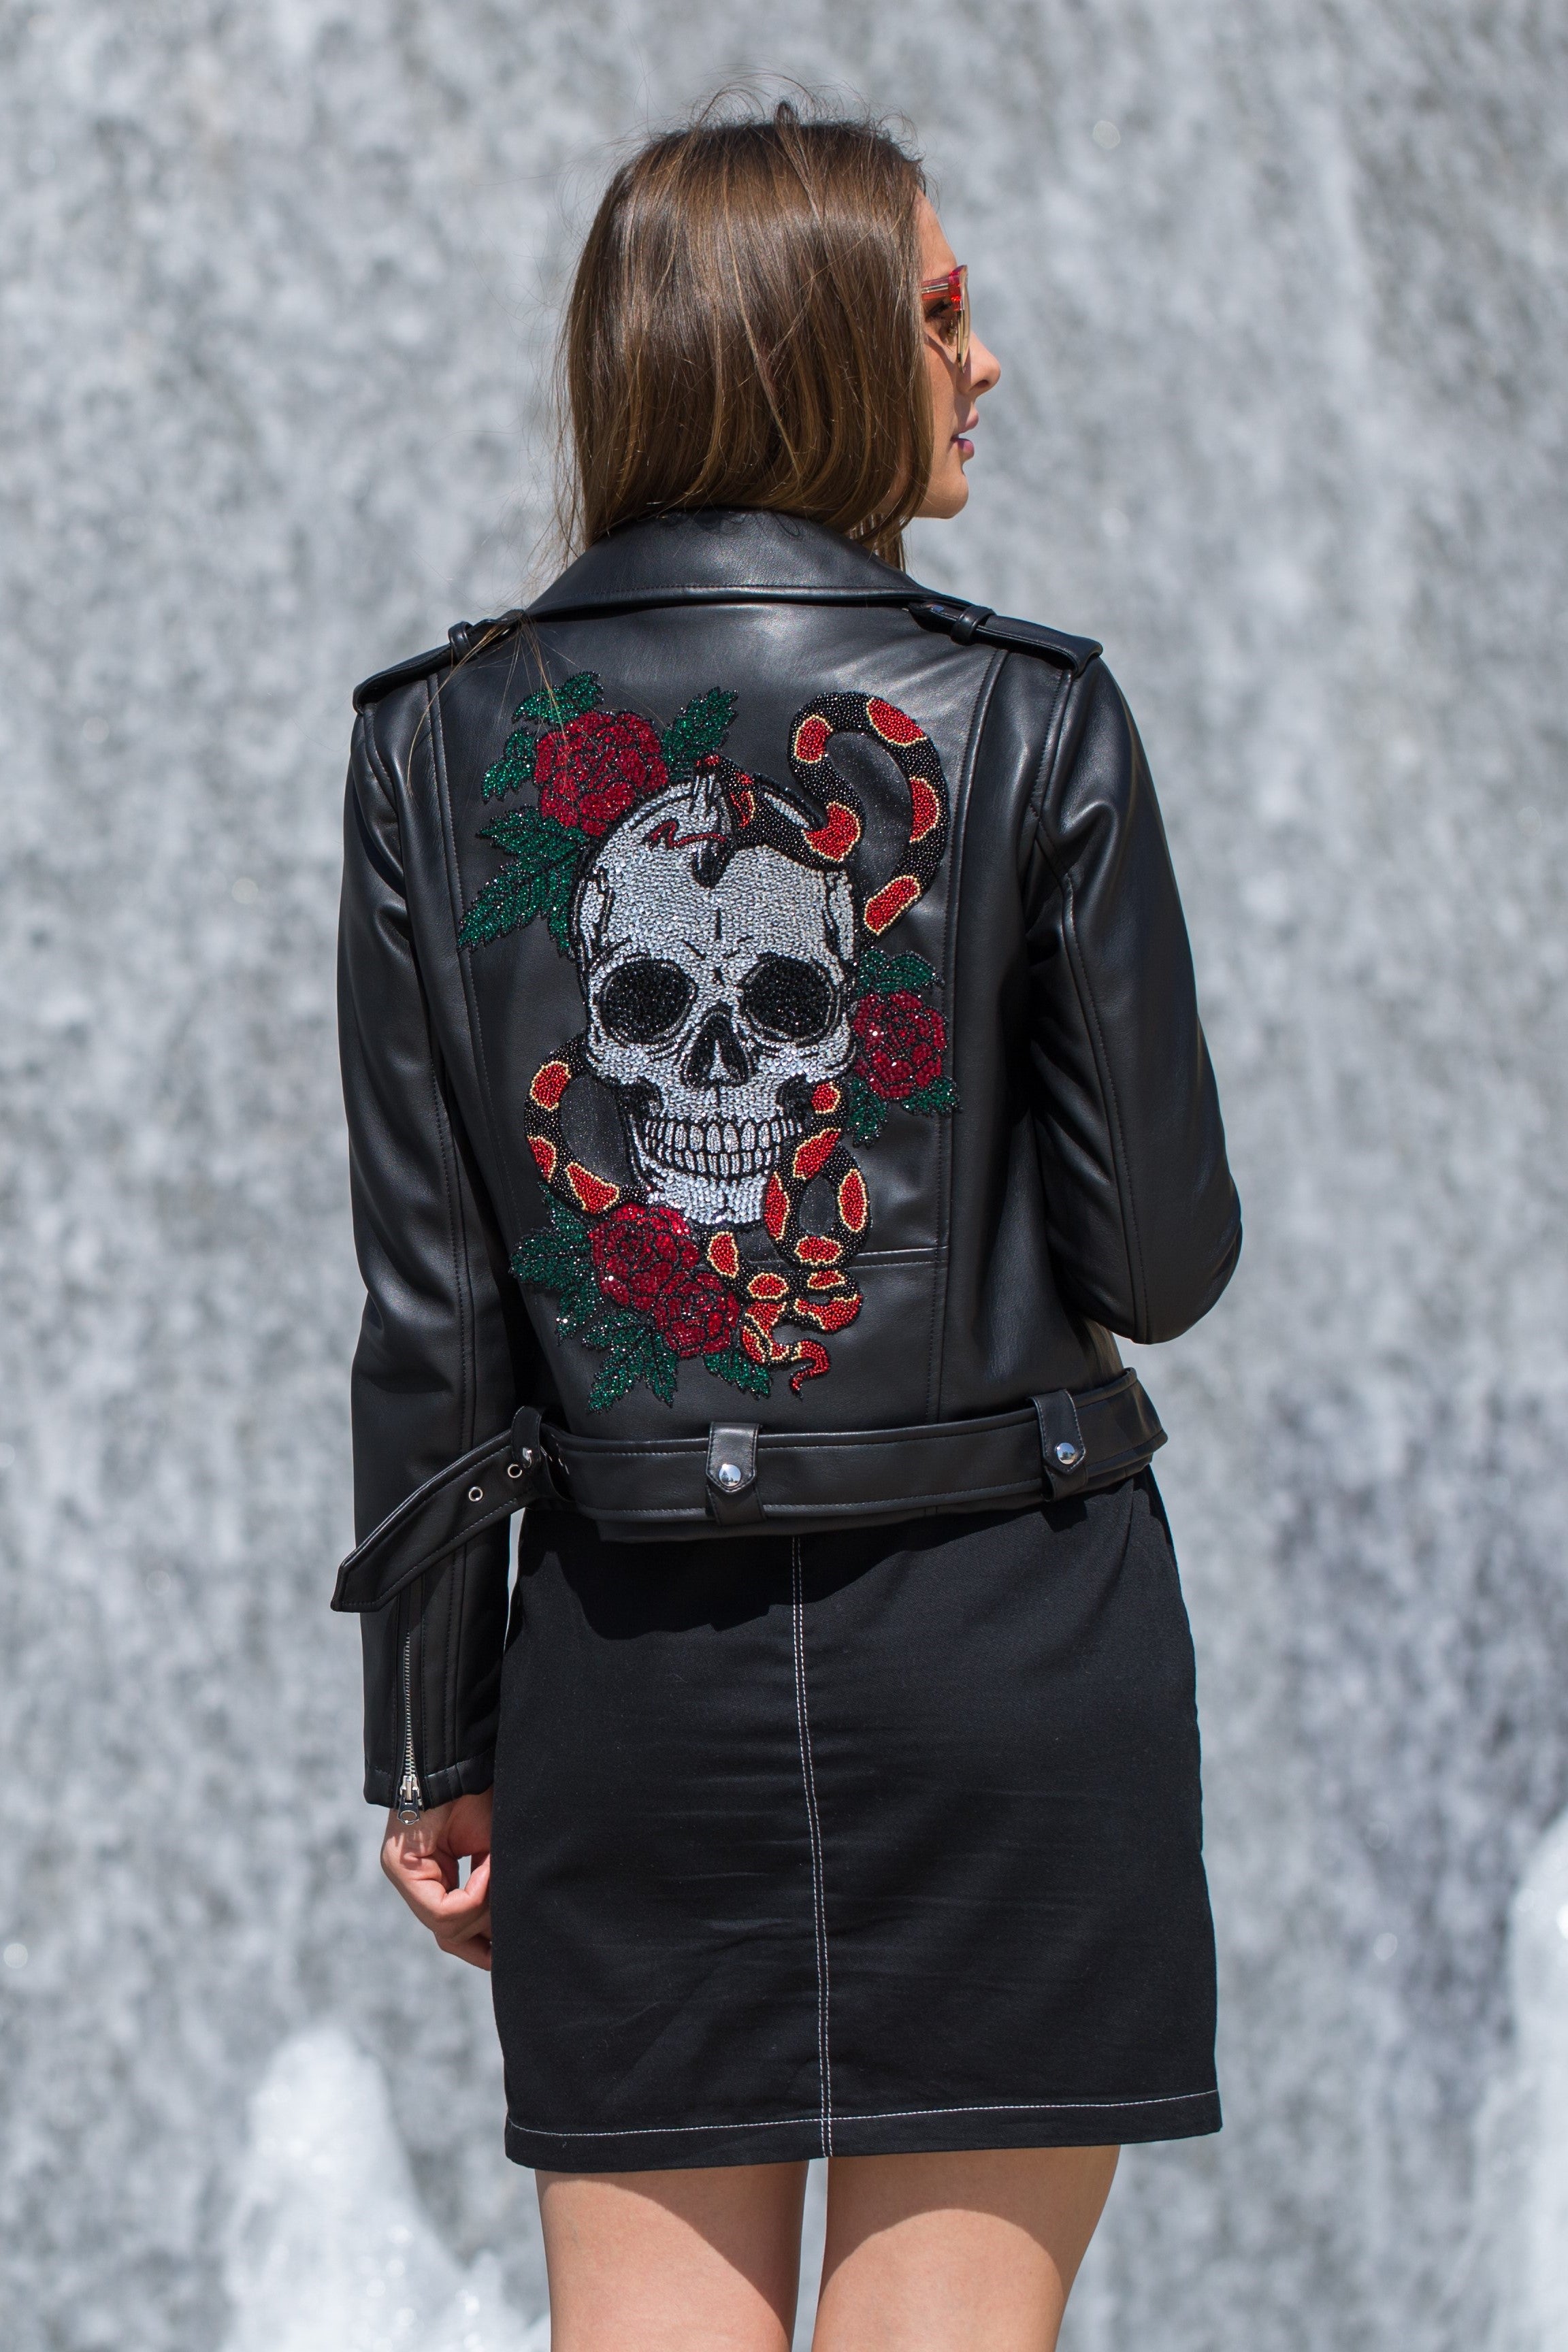 Crystal Skull & Roses Biker Jacket | Black Leather Jacket